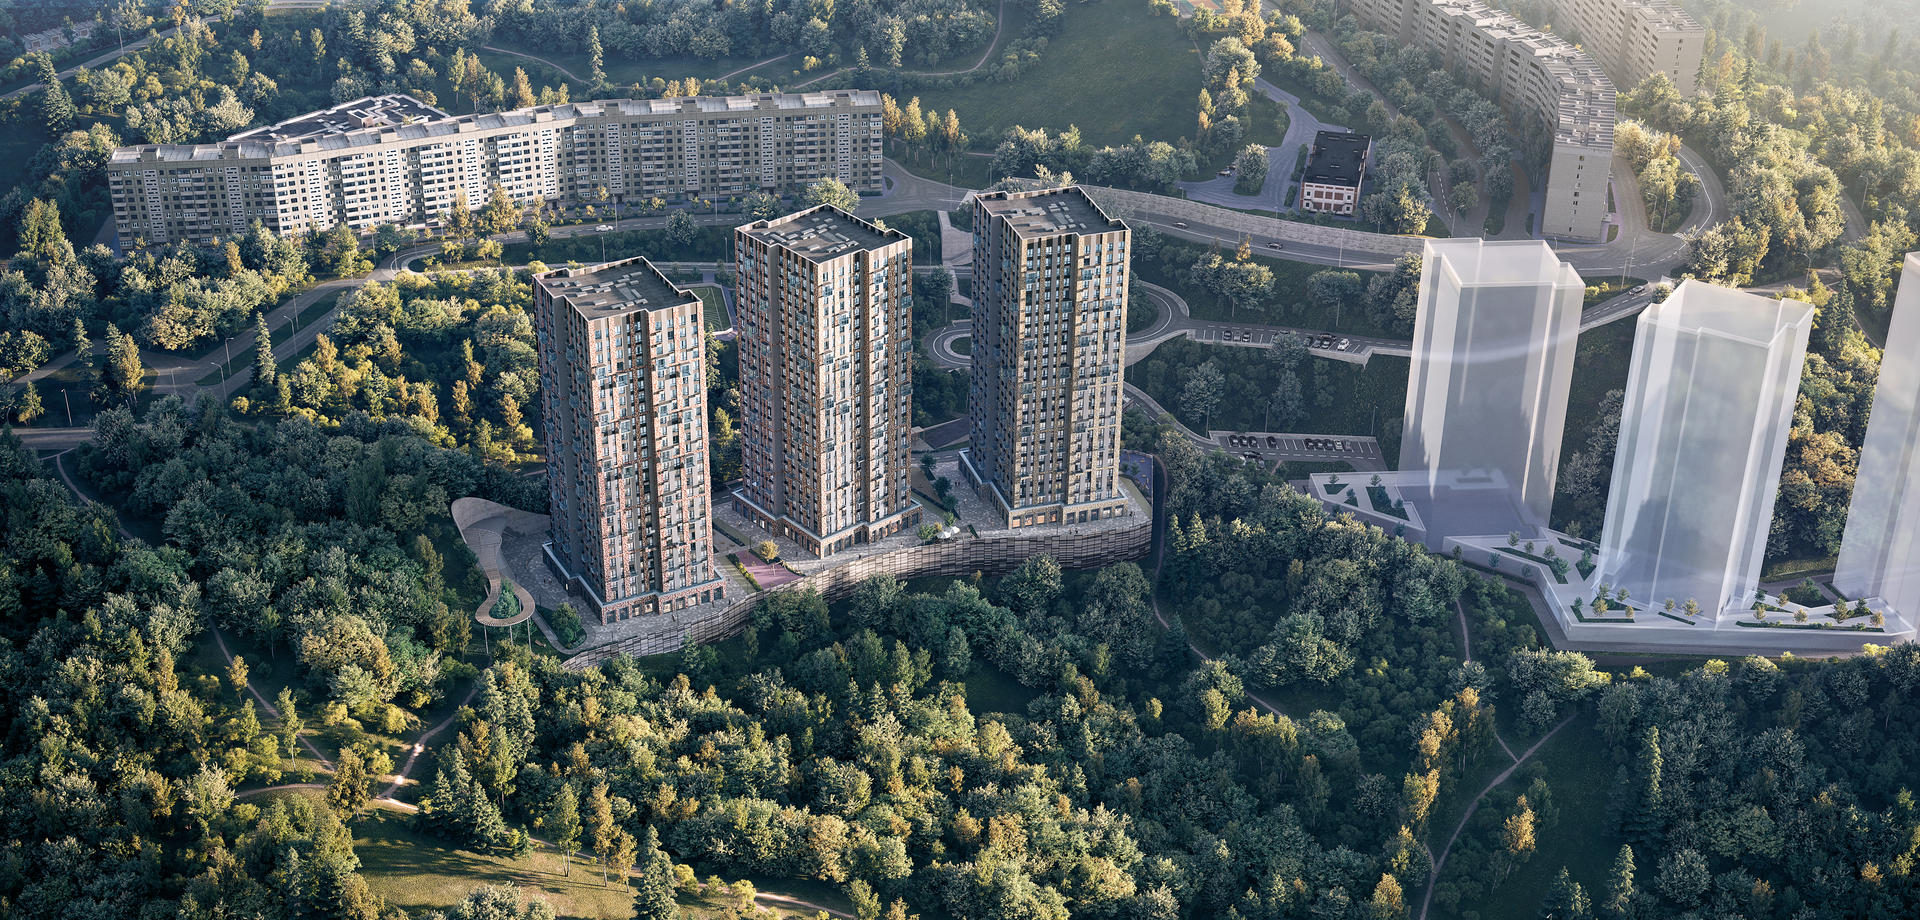 Продам квартиру в Владивостоке по адресу Сабанеева ул, 12, площадь 623 квм Недвижимость Приморский край (Россия)  Квартира расположена на 25 этаже 25 этажного монолитно-кирпичного дома (Корпус 1